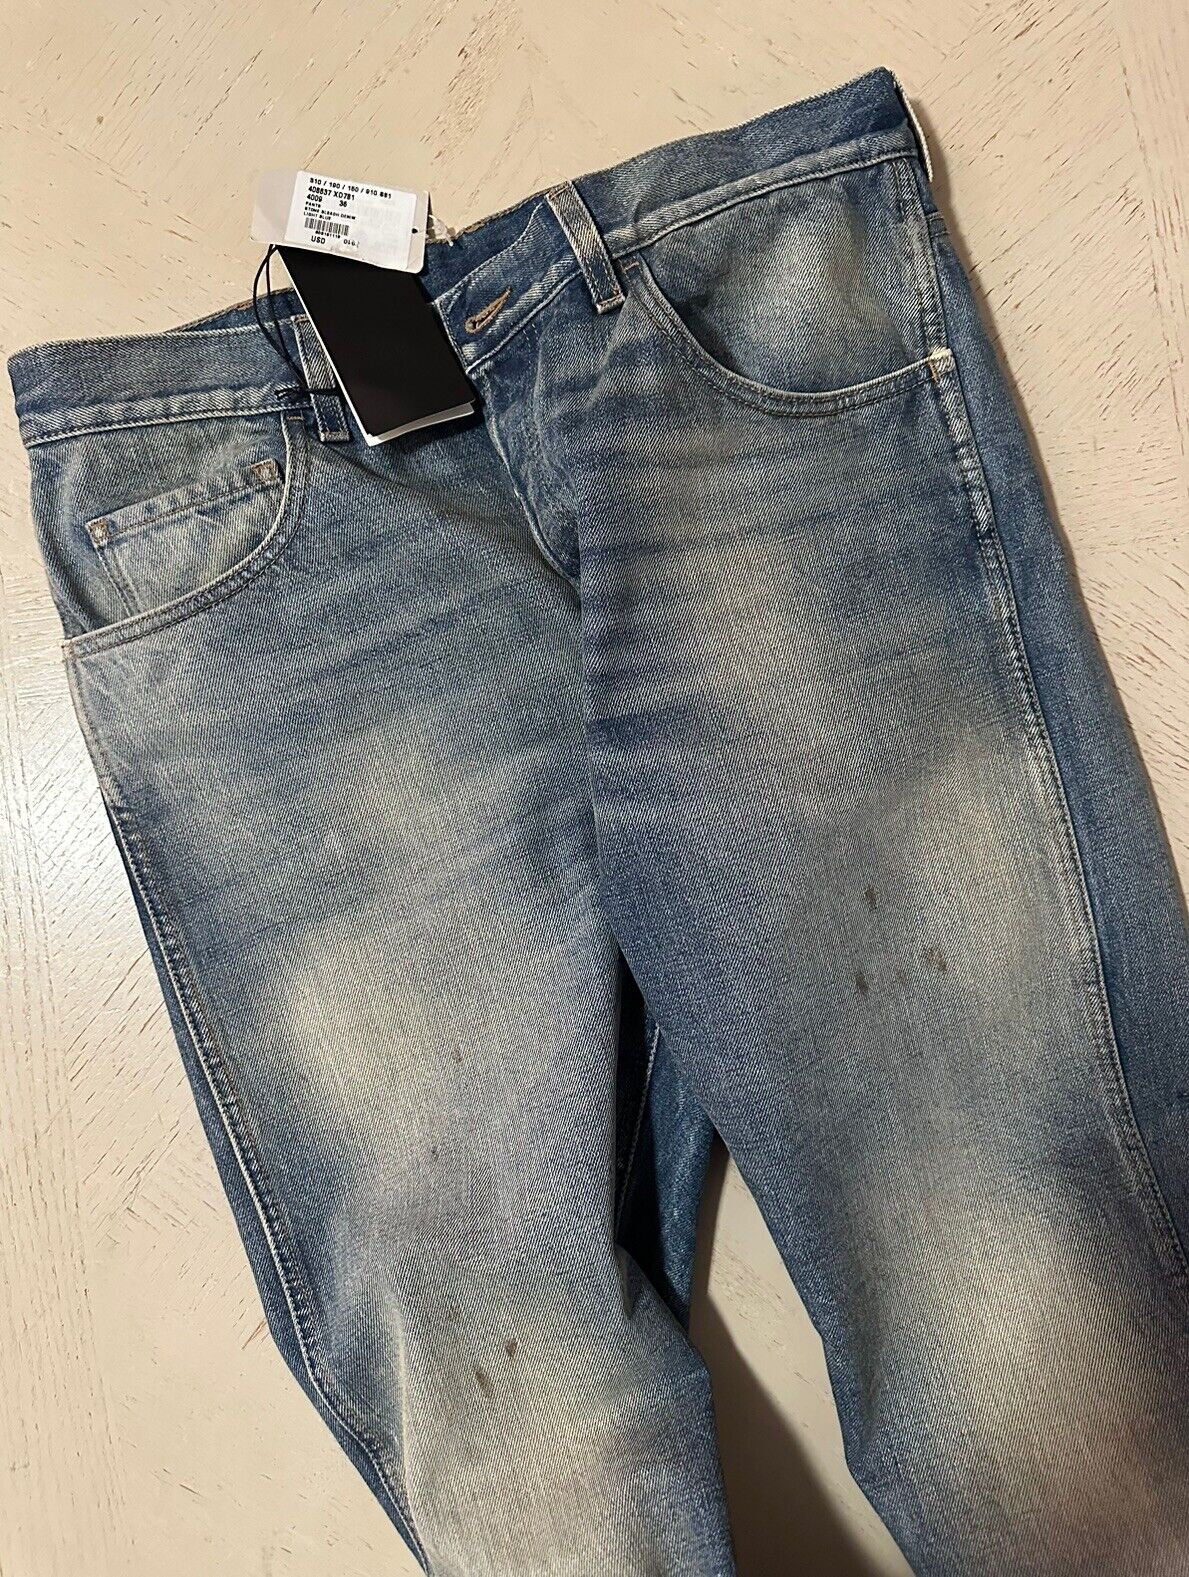 Новые мужские джинсы Gucci, синие джинсовые брюки, 36 долларов, США, Италия, 1280 долларов.